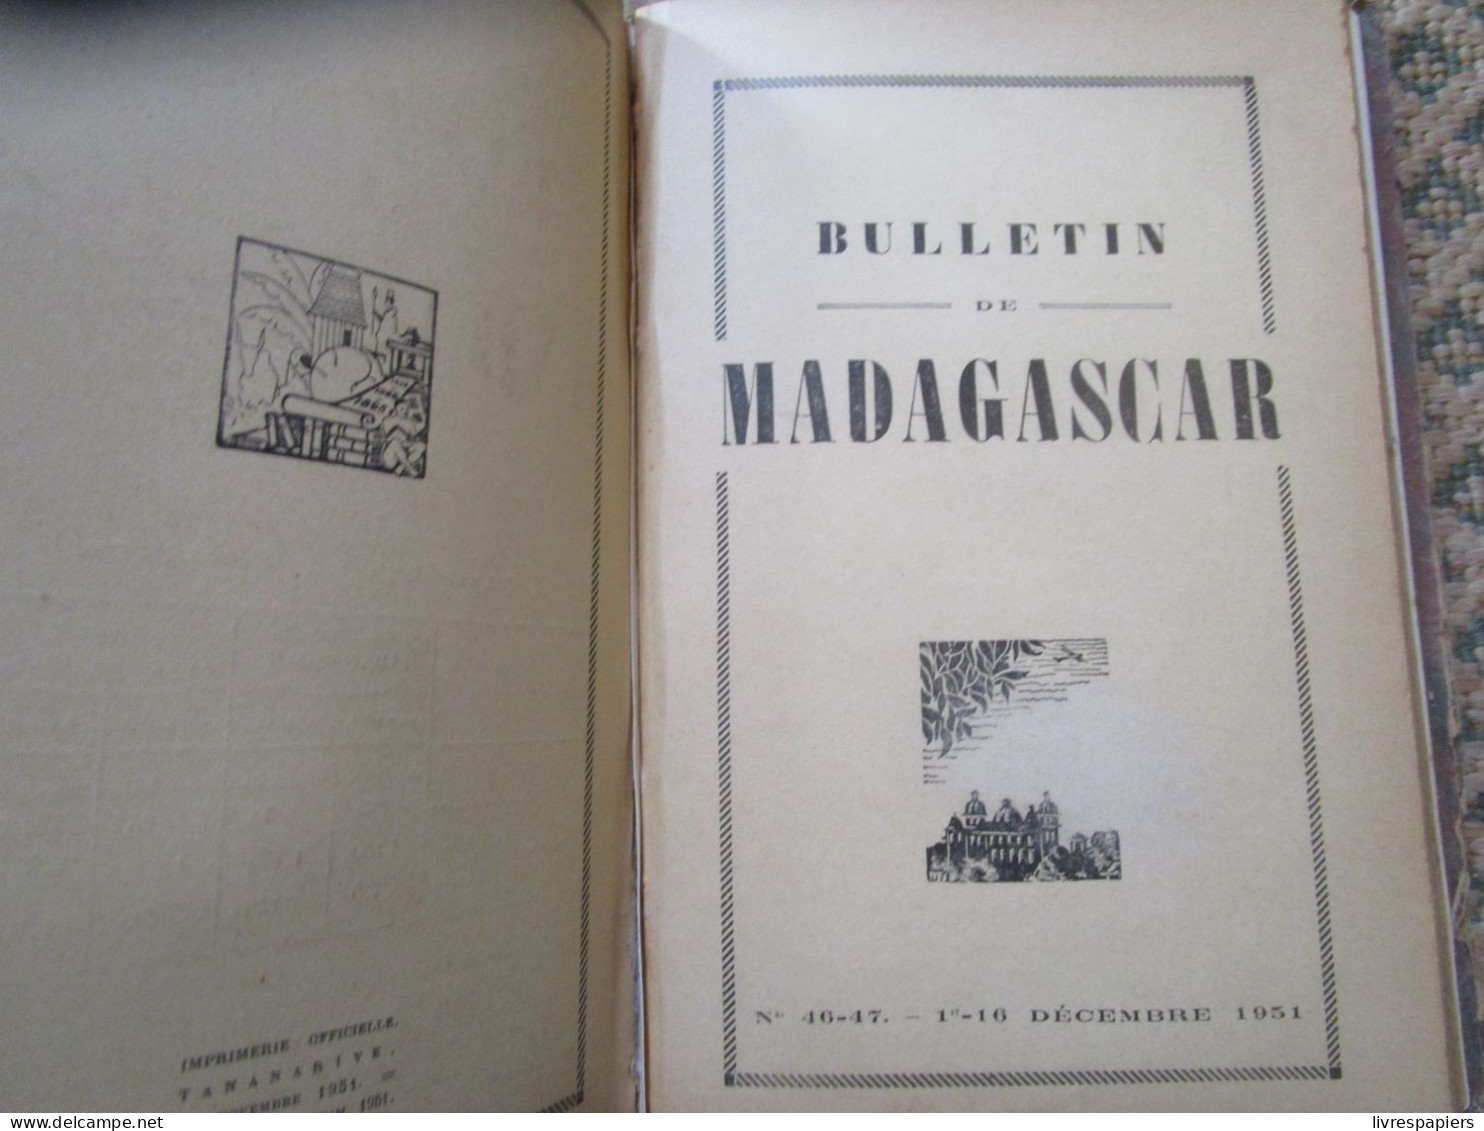 Madagascar BULLETIN DE MADAGASCAR 1951 Complet Janv à Dec , Relier Couvertures Conservées - Historia